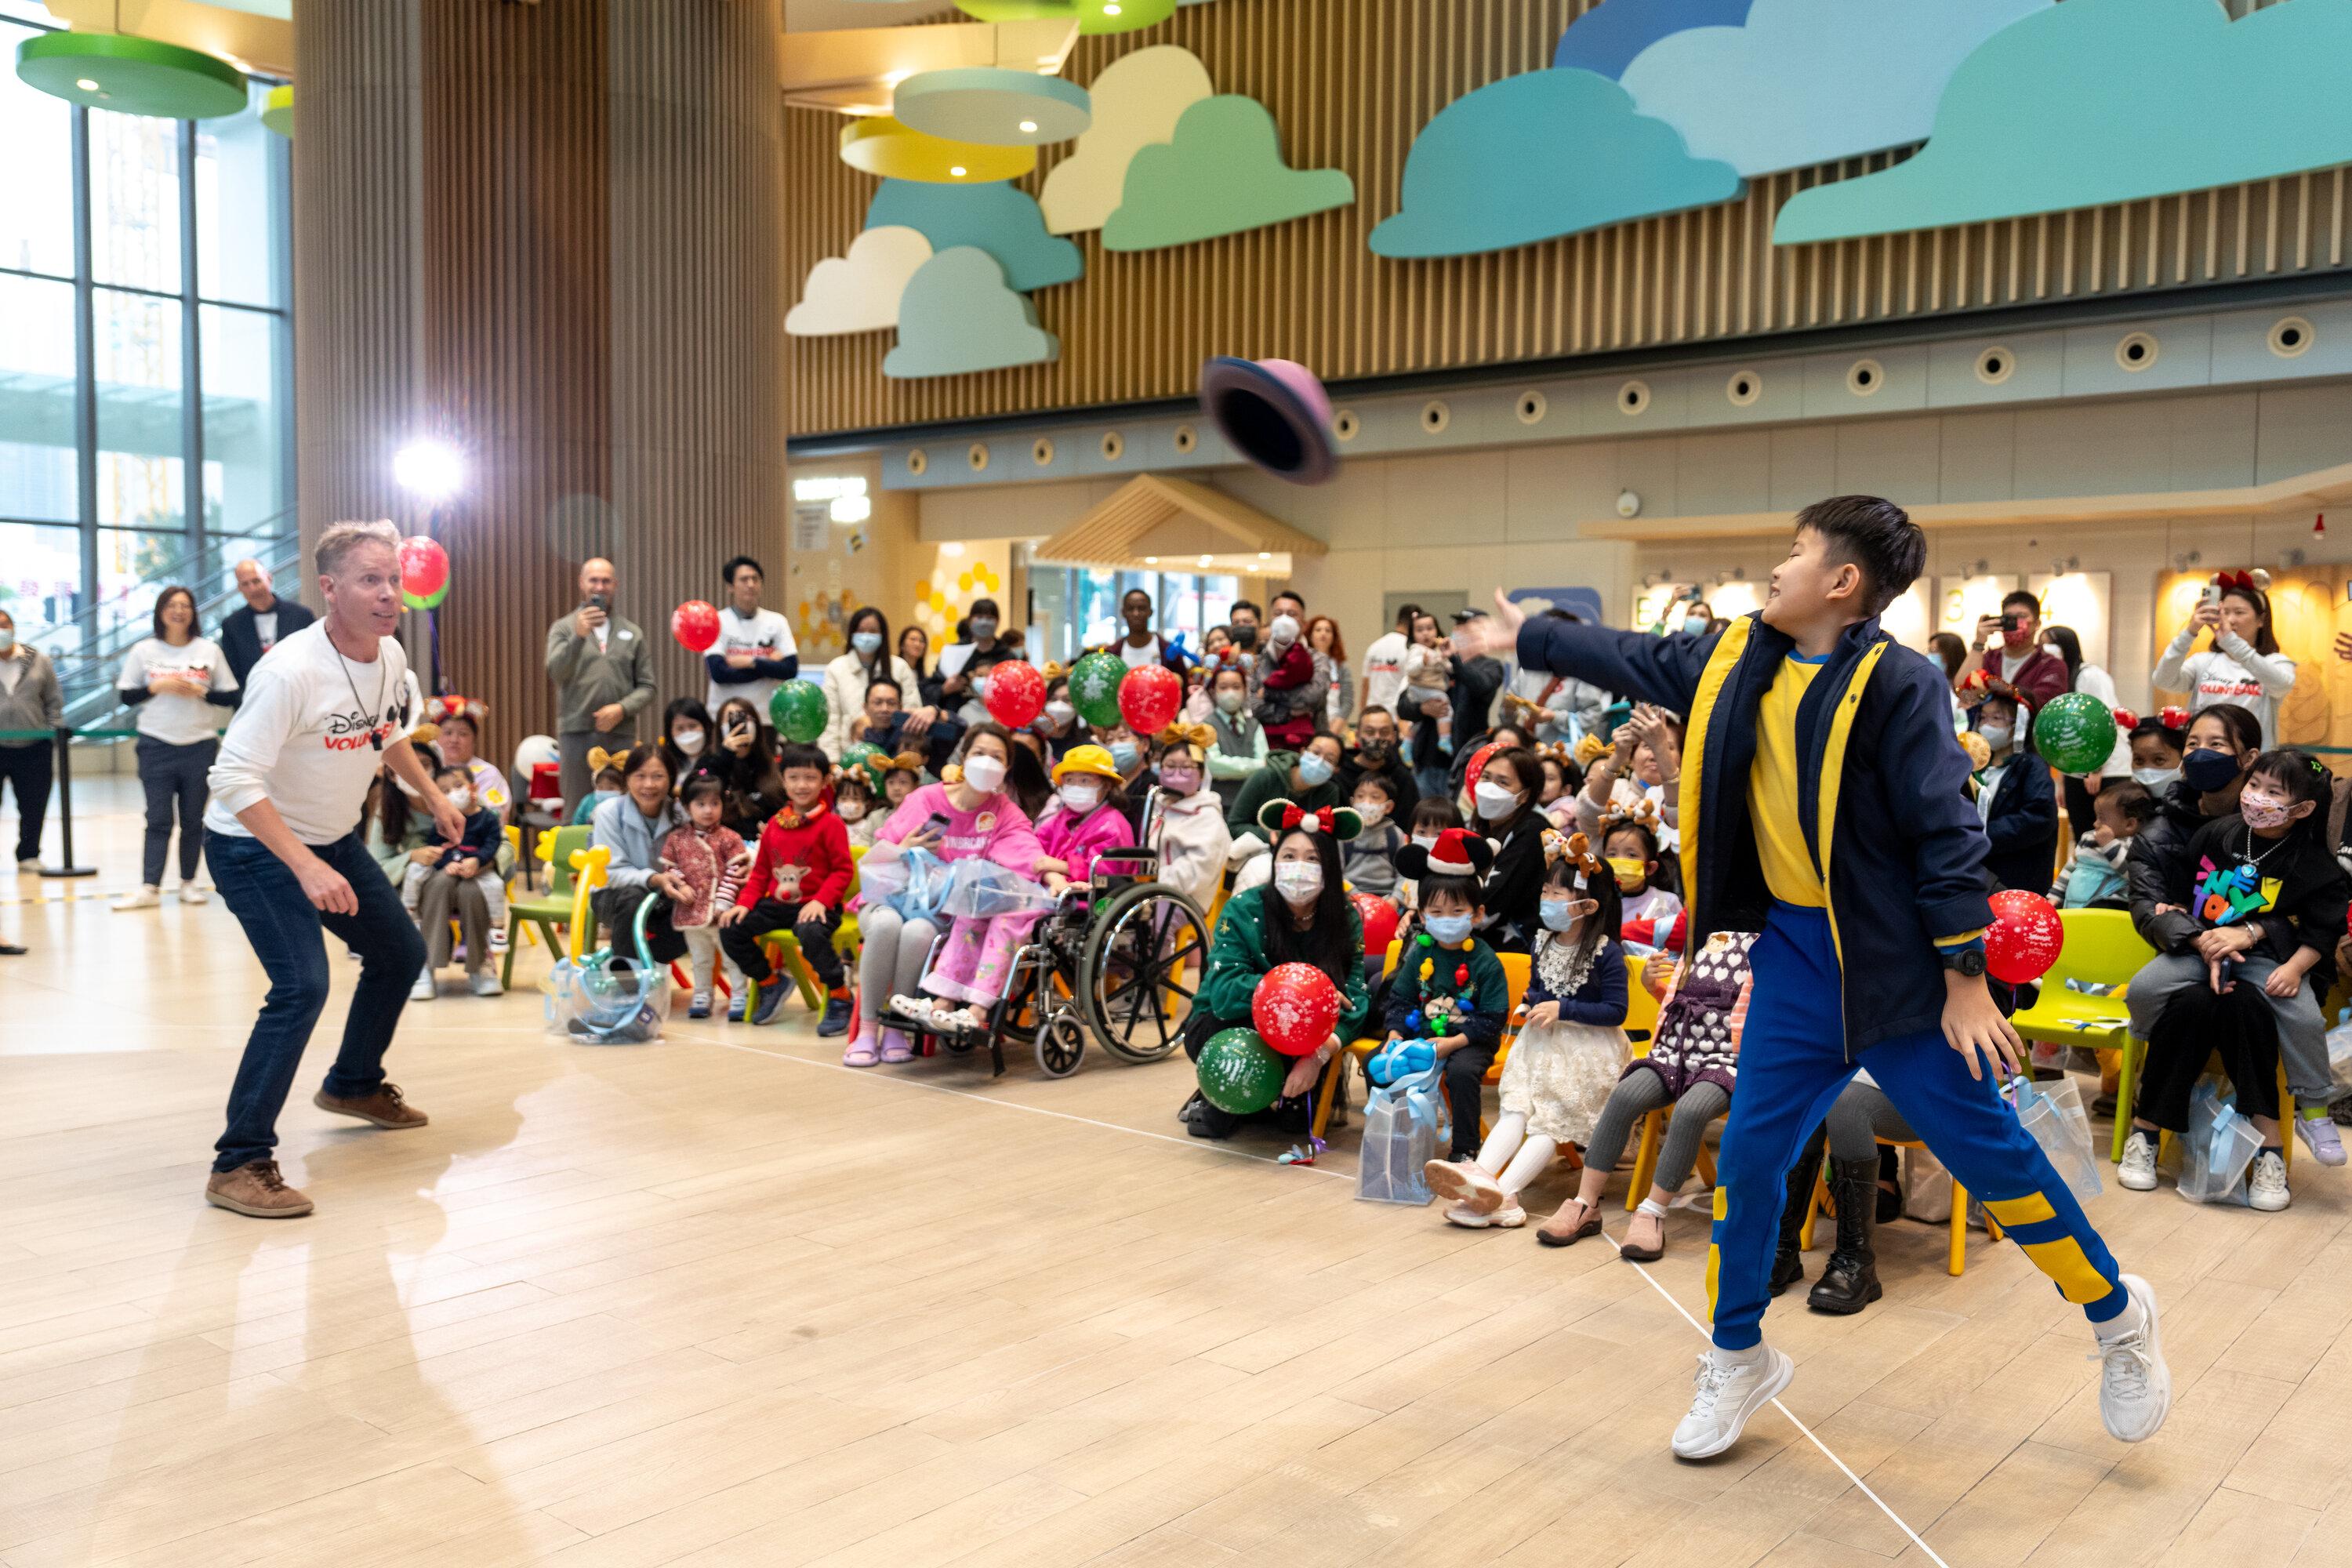 香港兒童醫院與迪士尼義工隊合作，在醫院大堂為病童及家人舉辦聖誕派對，精彩節目包括歌舞、魔術和攤位遊戲等，歡聲笑語不絕。
